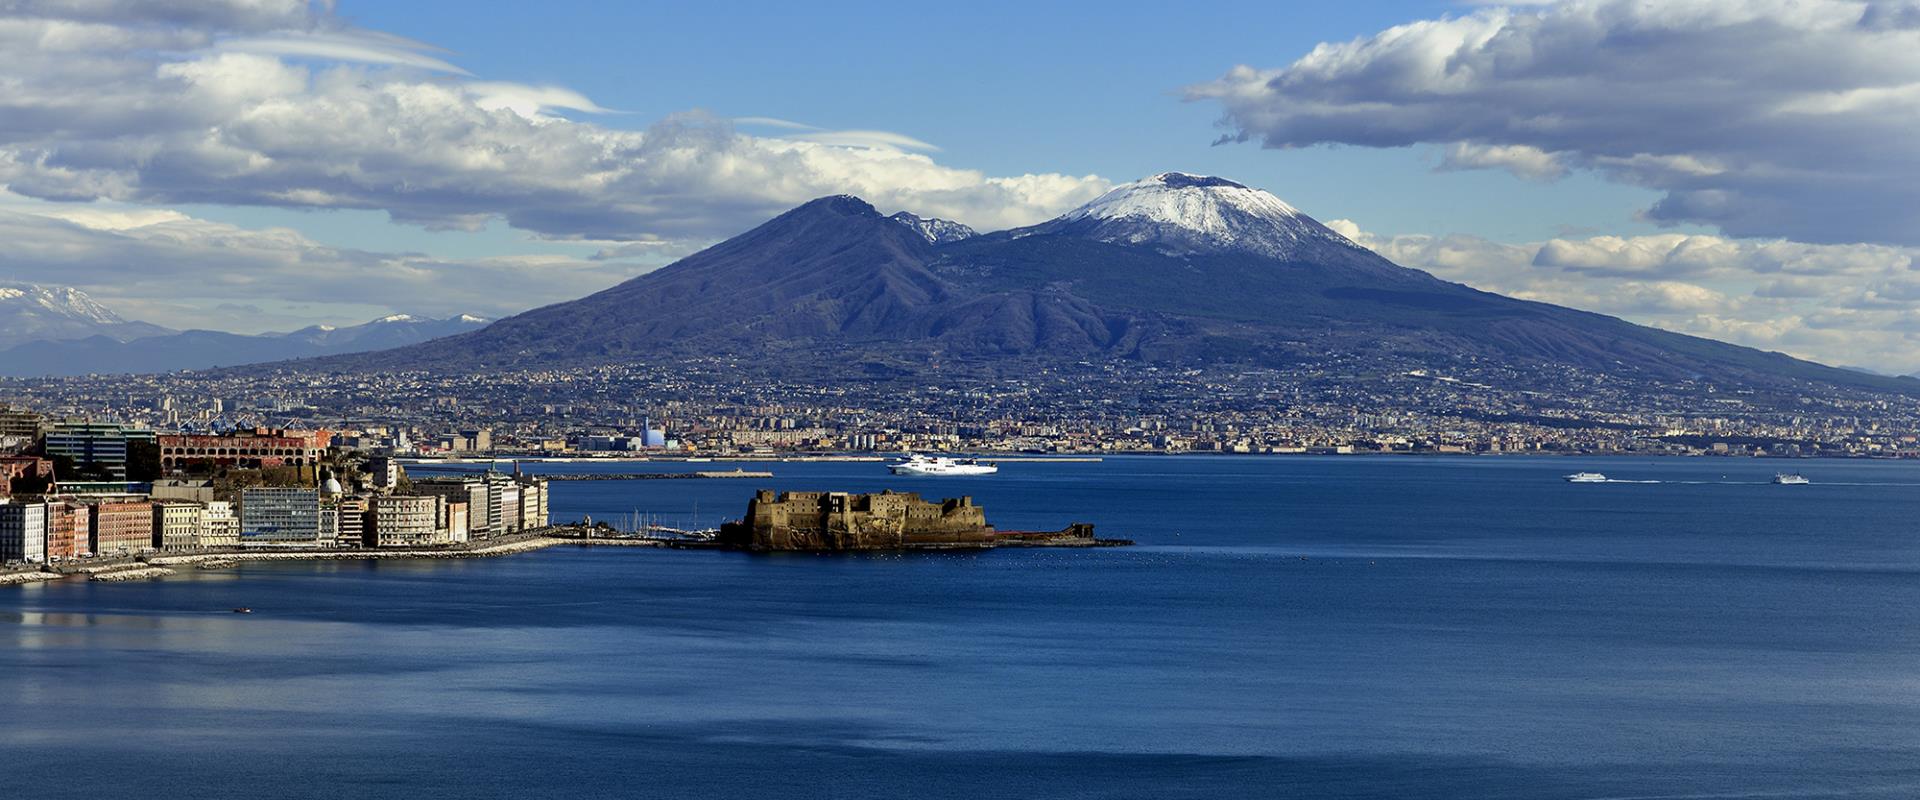 La maravillosa vista del Golfo de Nápoles desde el Hotel Posillipo